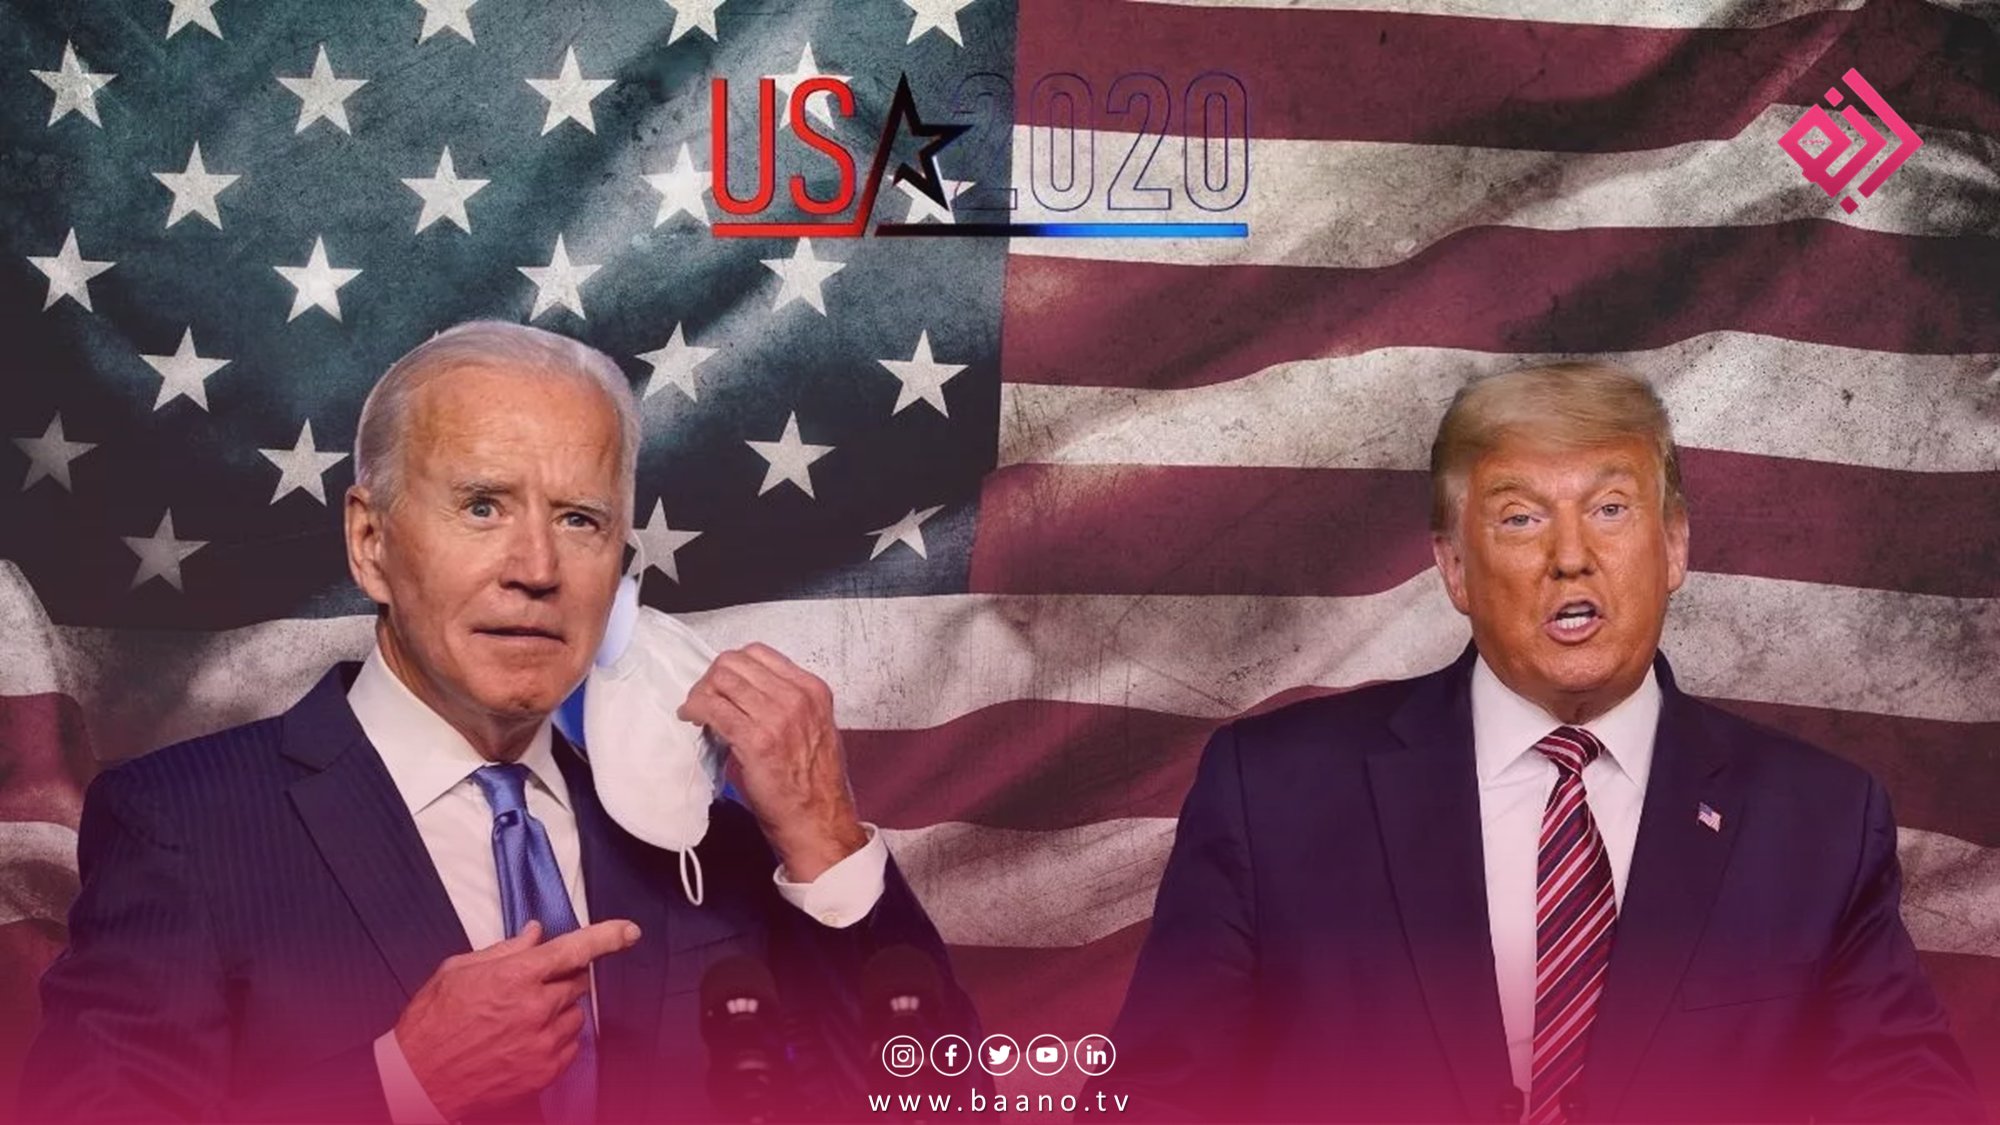 دو نظرسنجی جدید نشان داد که جو بایدن رئیس جمهوری کنونی آمریکا با اختلاف بسیار کمی از دونالد ترامپ رئیس جمهور سابق پیشی گرفته است.